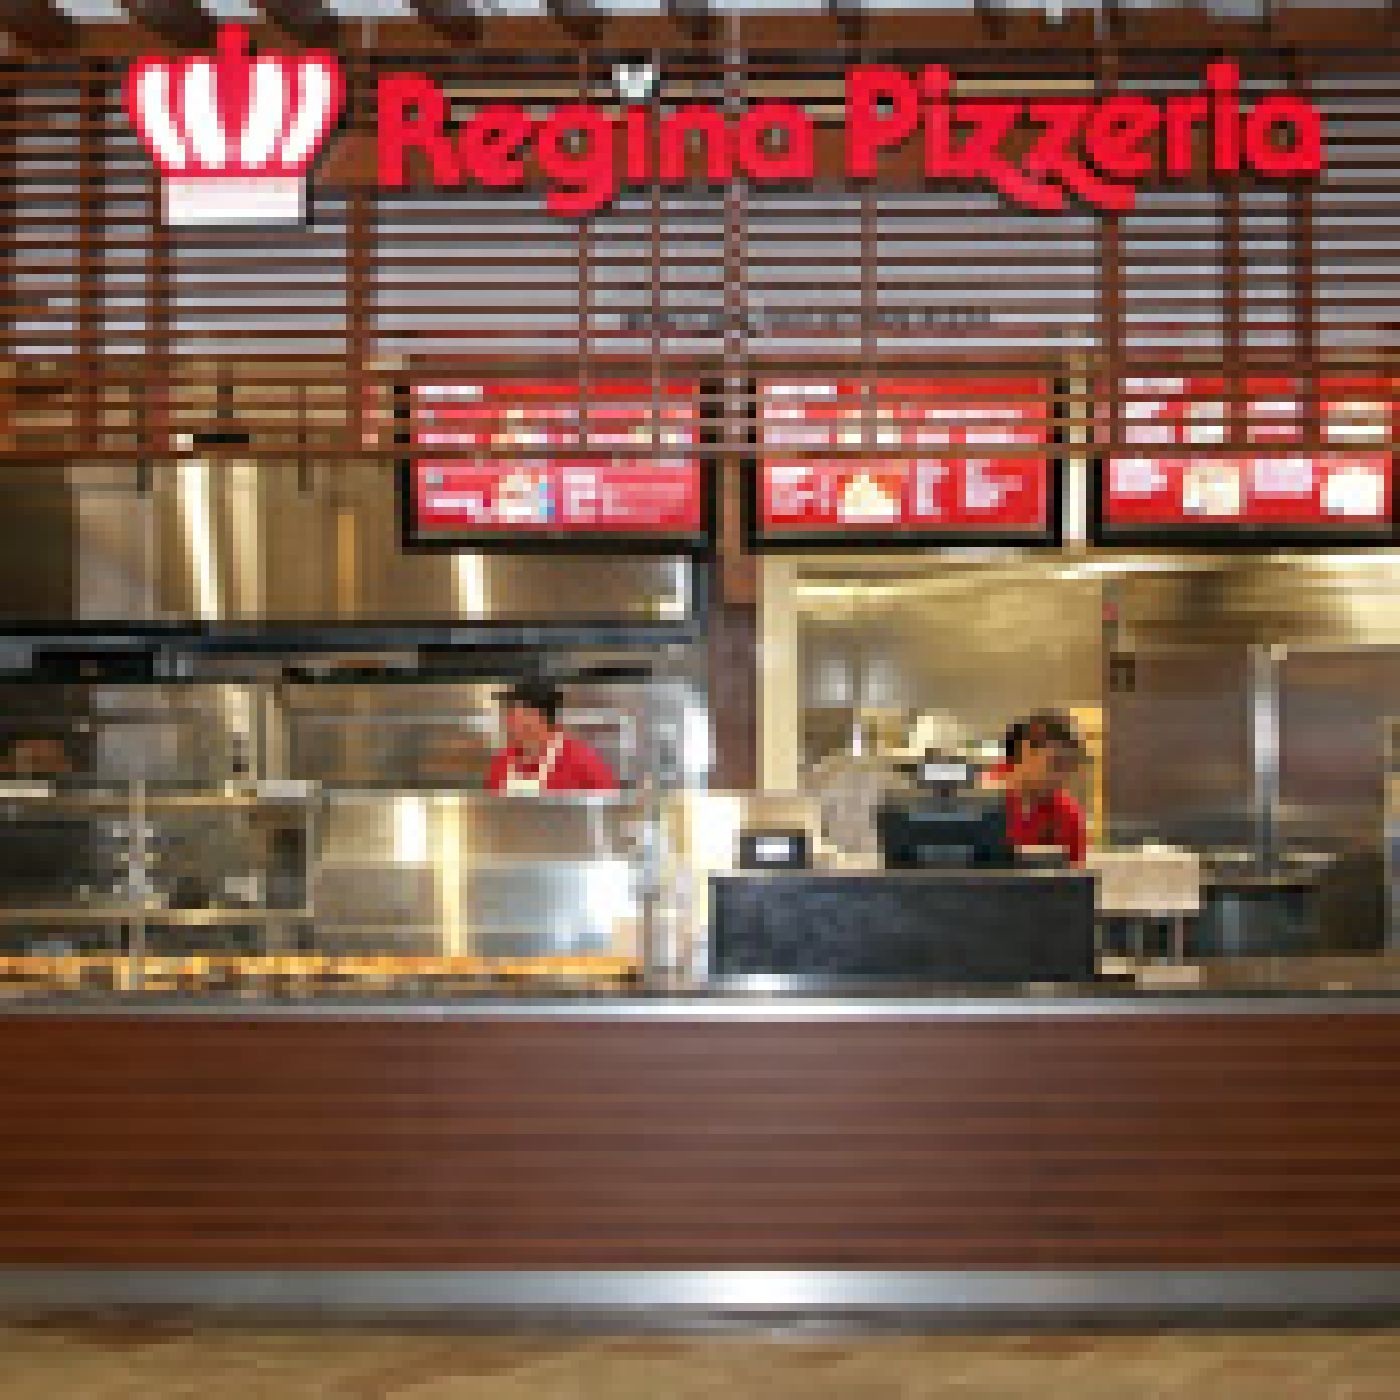 Regina Pizzeria at Foxwoods Resort Casino